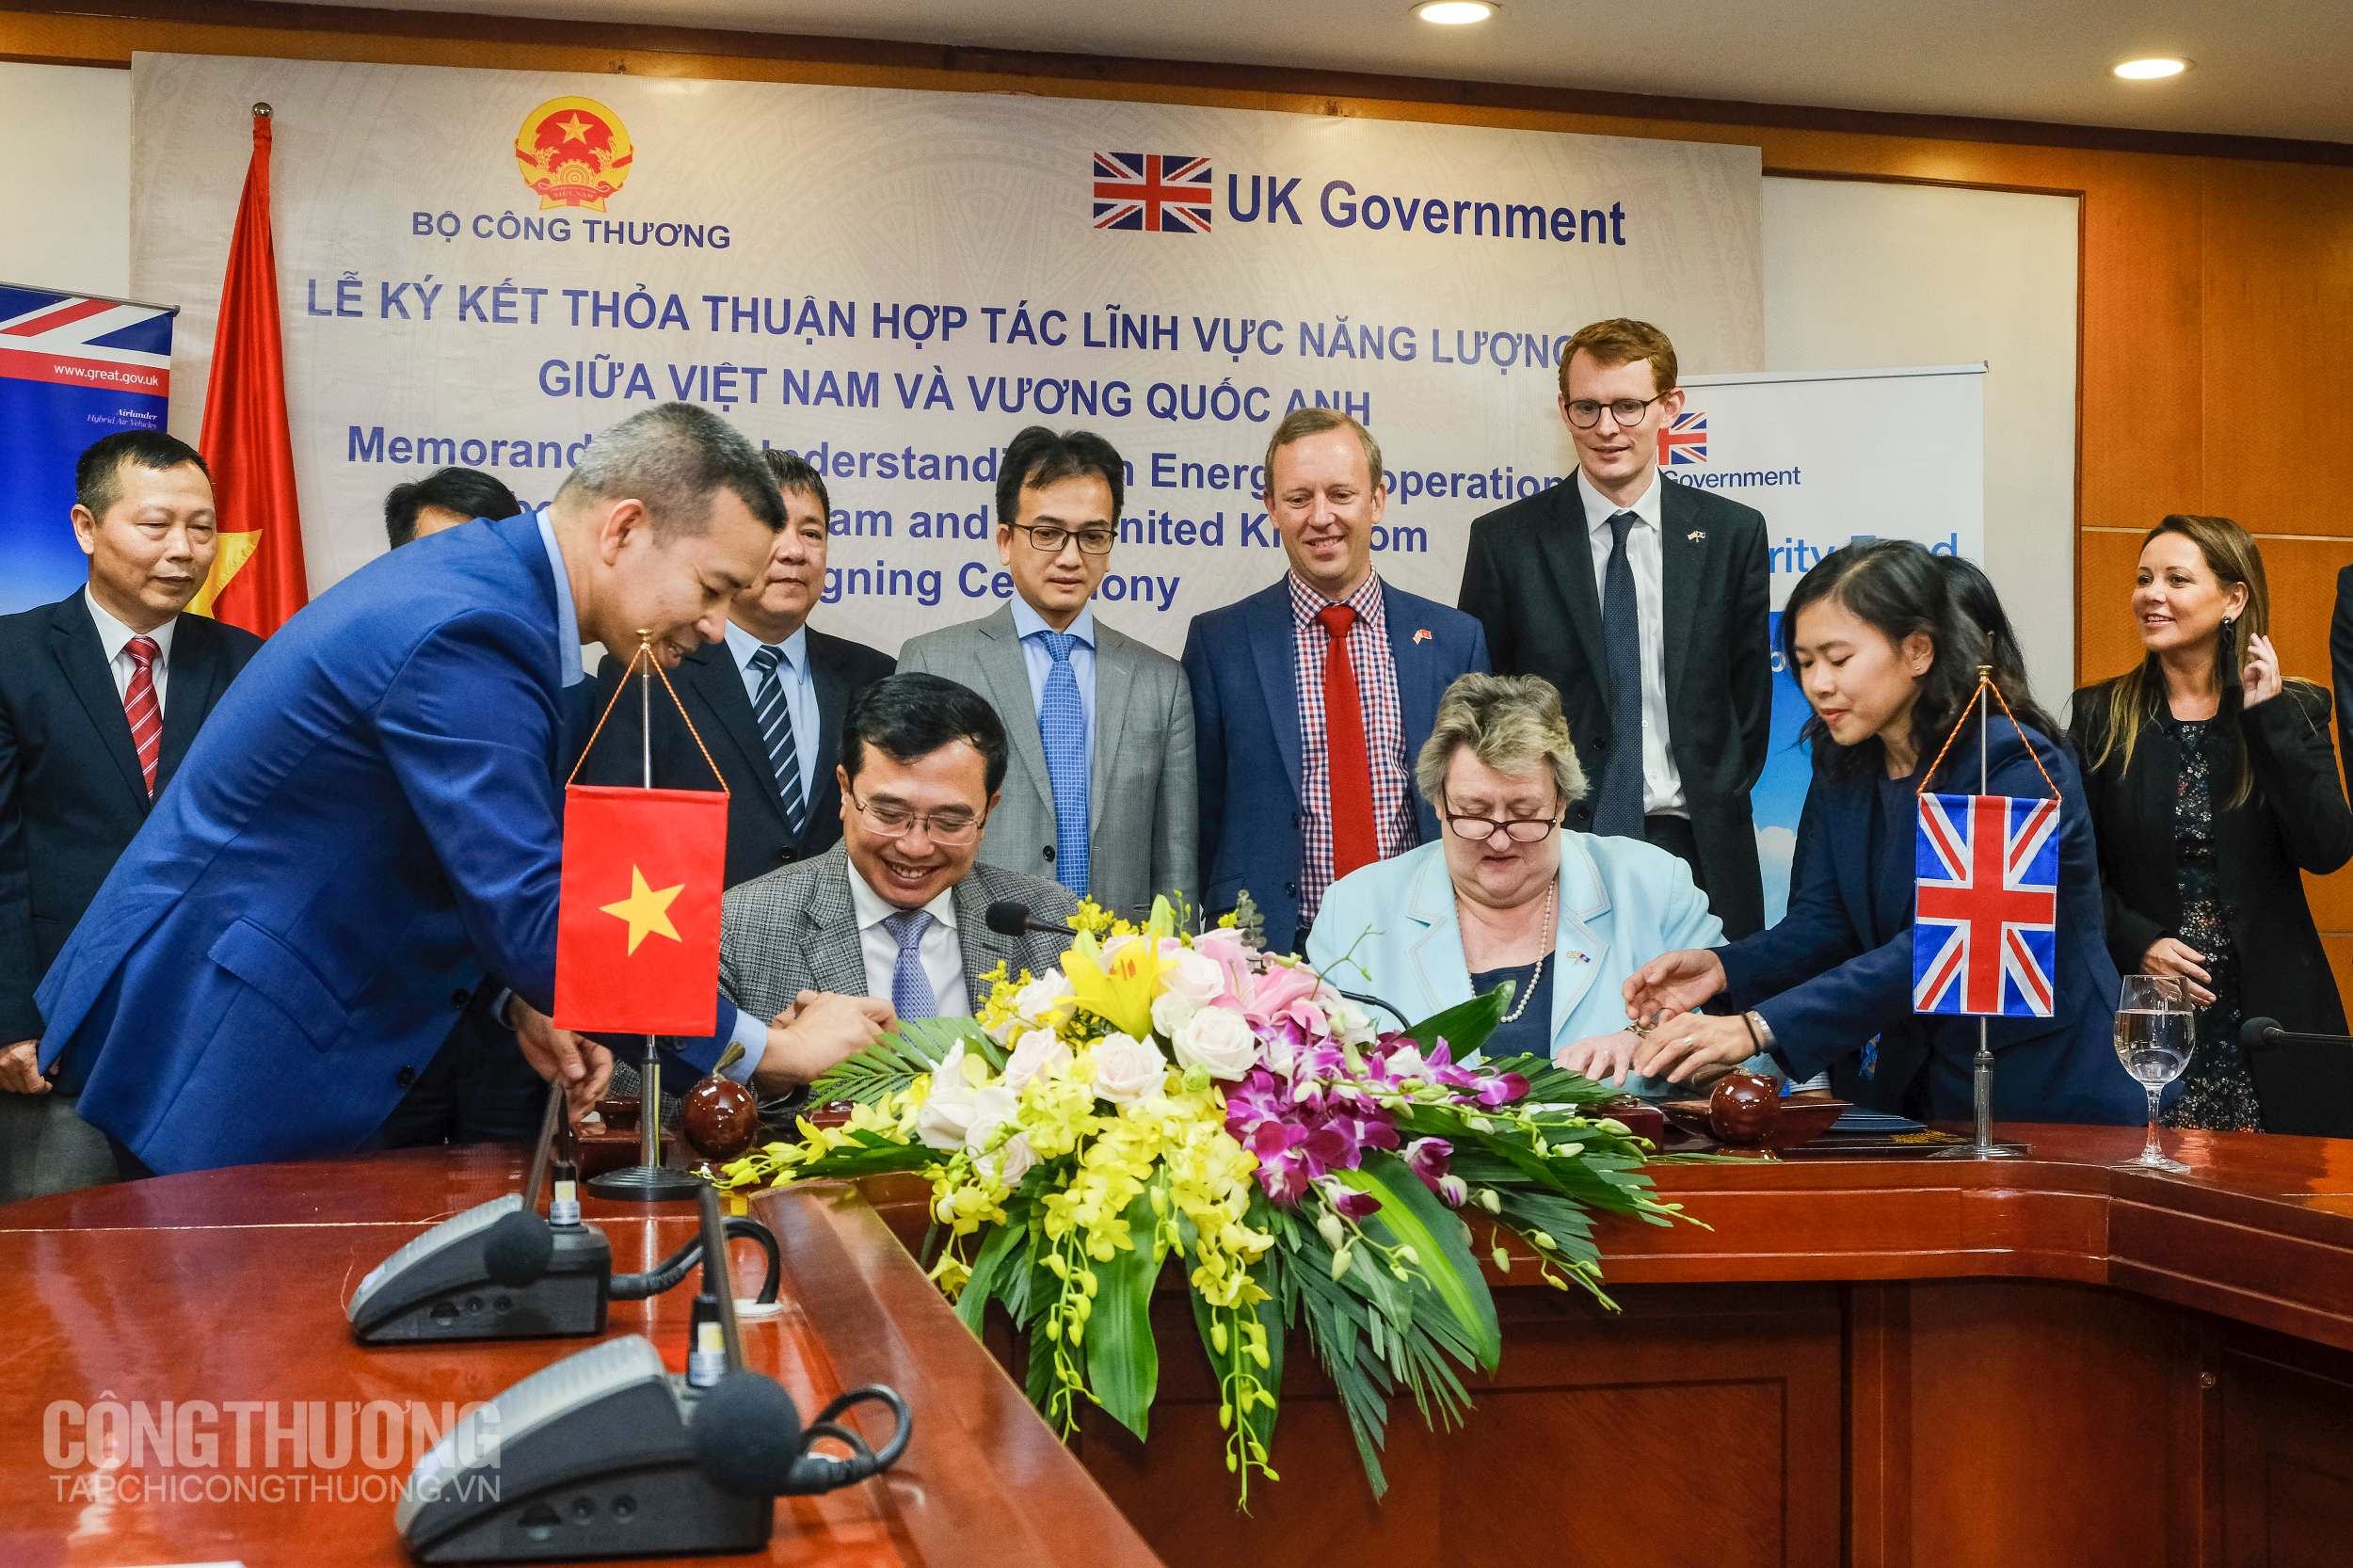 Thứ trưởng Bộ Công Thương Việt Nam Hoàng Quốc Vượng và hứ trưởng Bộ ngoại giao Vương Quốc Anh Heather Wheeler ký kết biên bản ghi nhớ